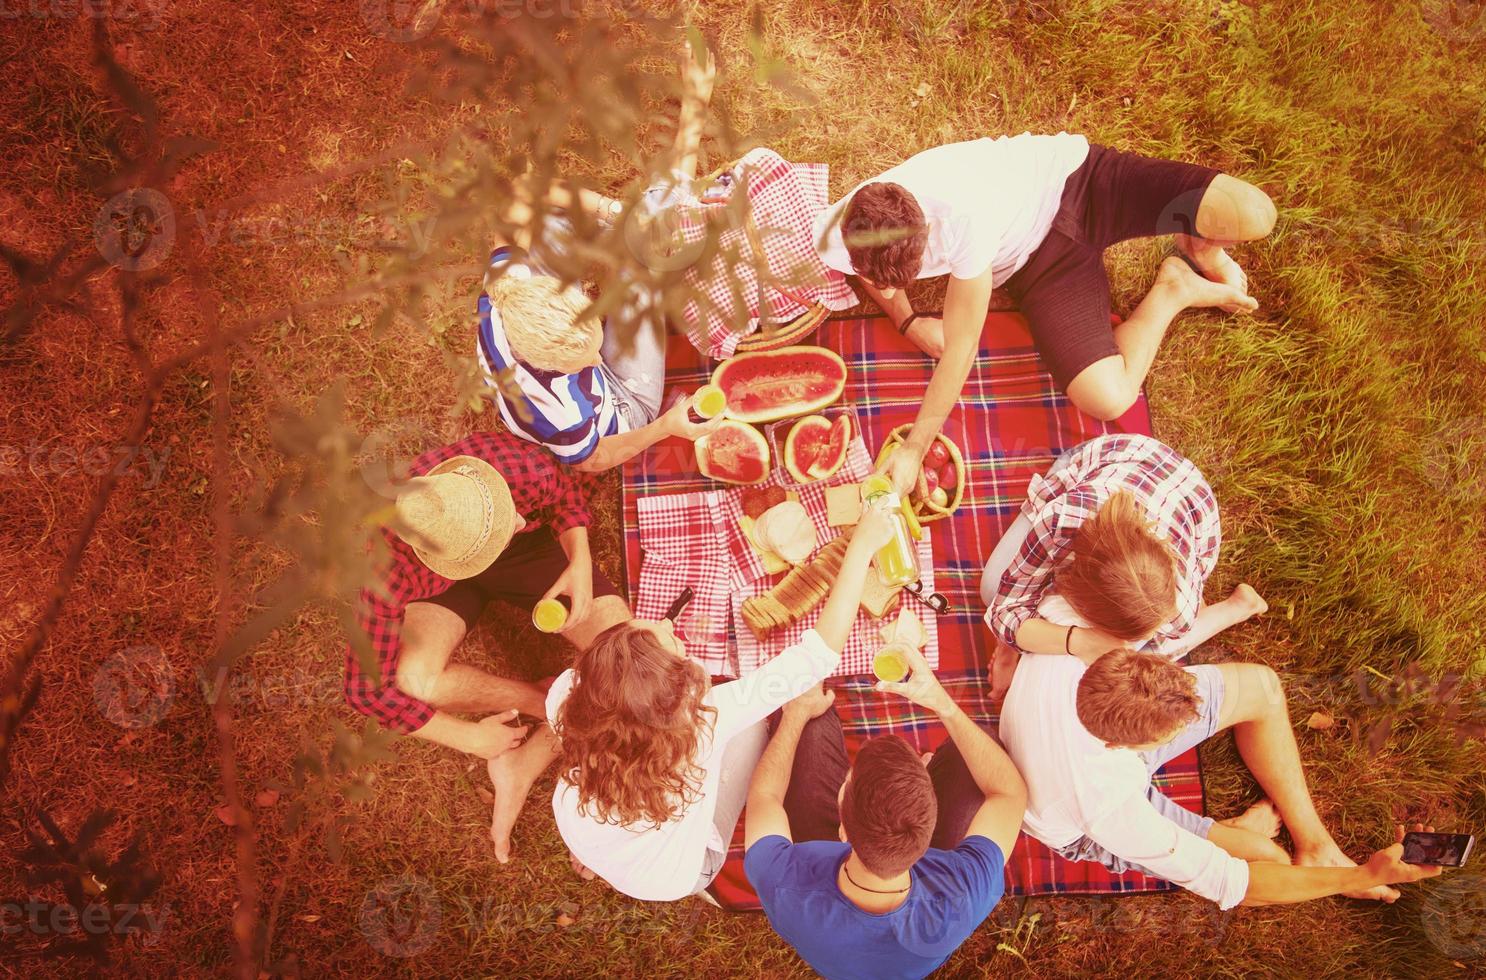 vista superior del grupo de amigos disfrutando del tiempo de picnic foto